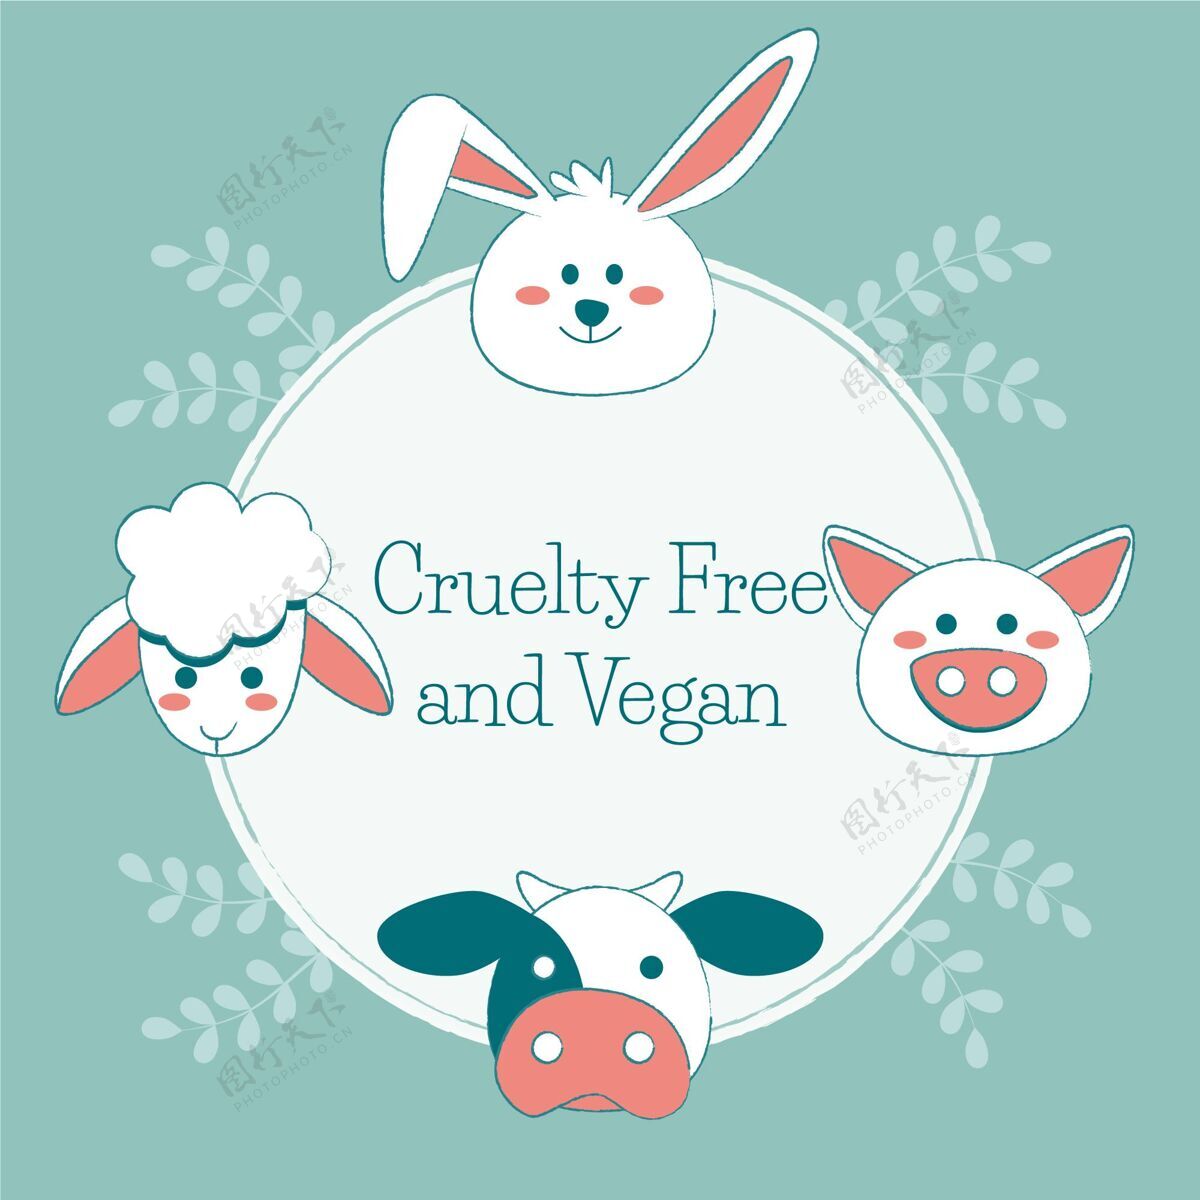 残酷残忍自由和素食主义的信息旁边画动物测试生态免费